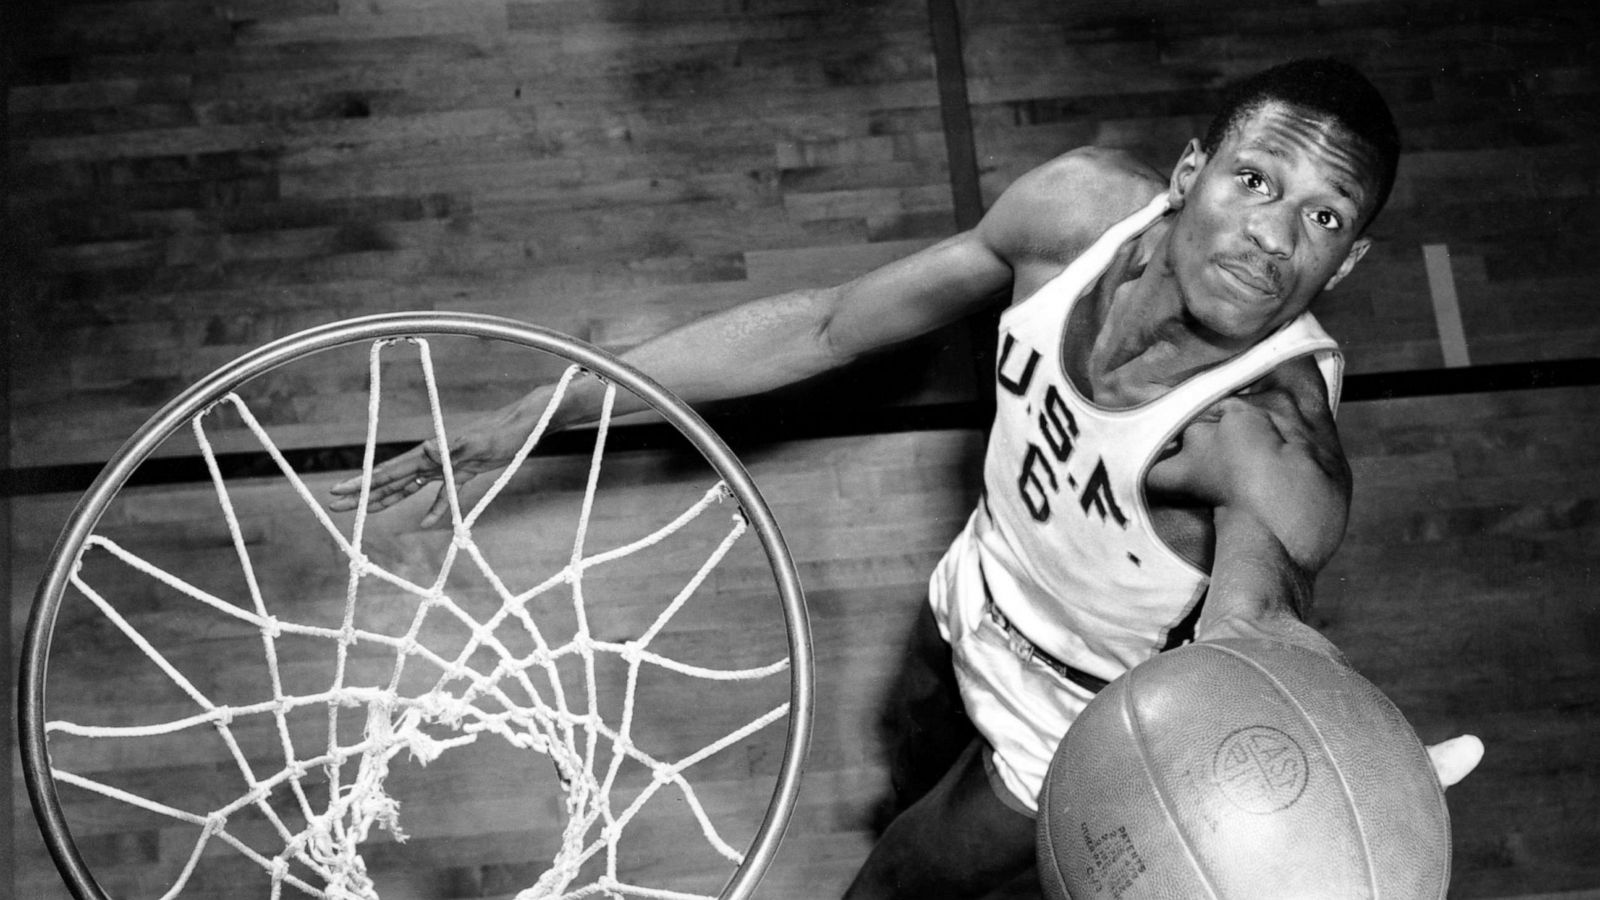 Preminuo slavni košarkaš Bill Russell